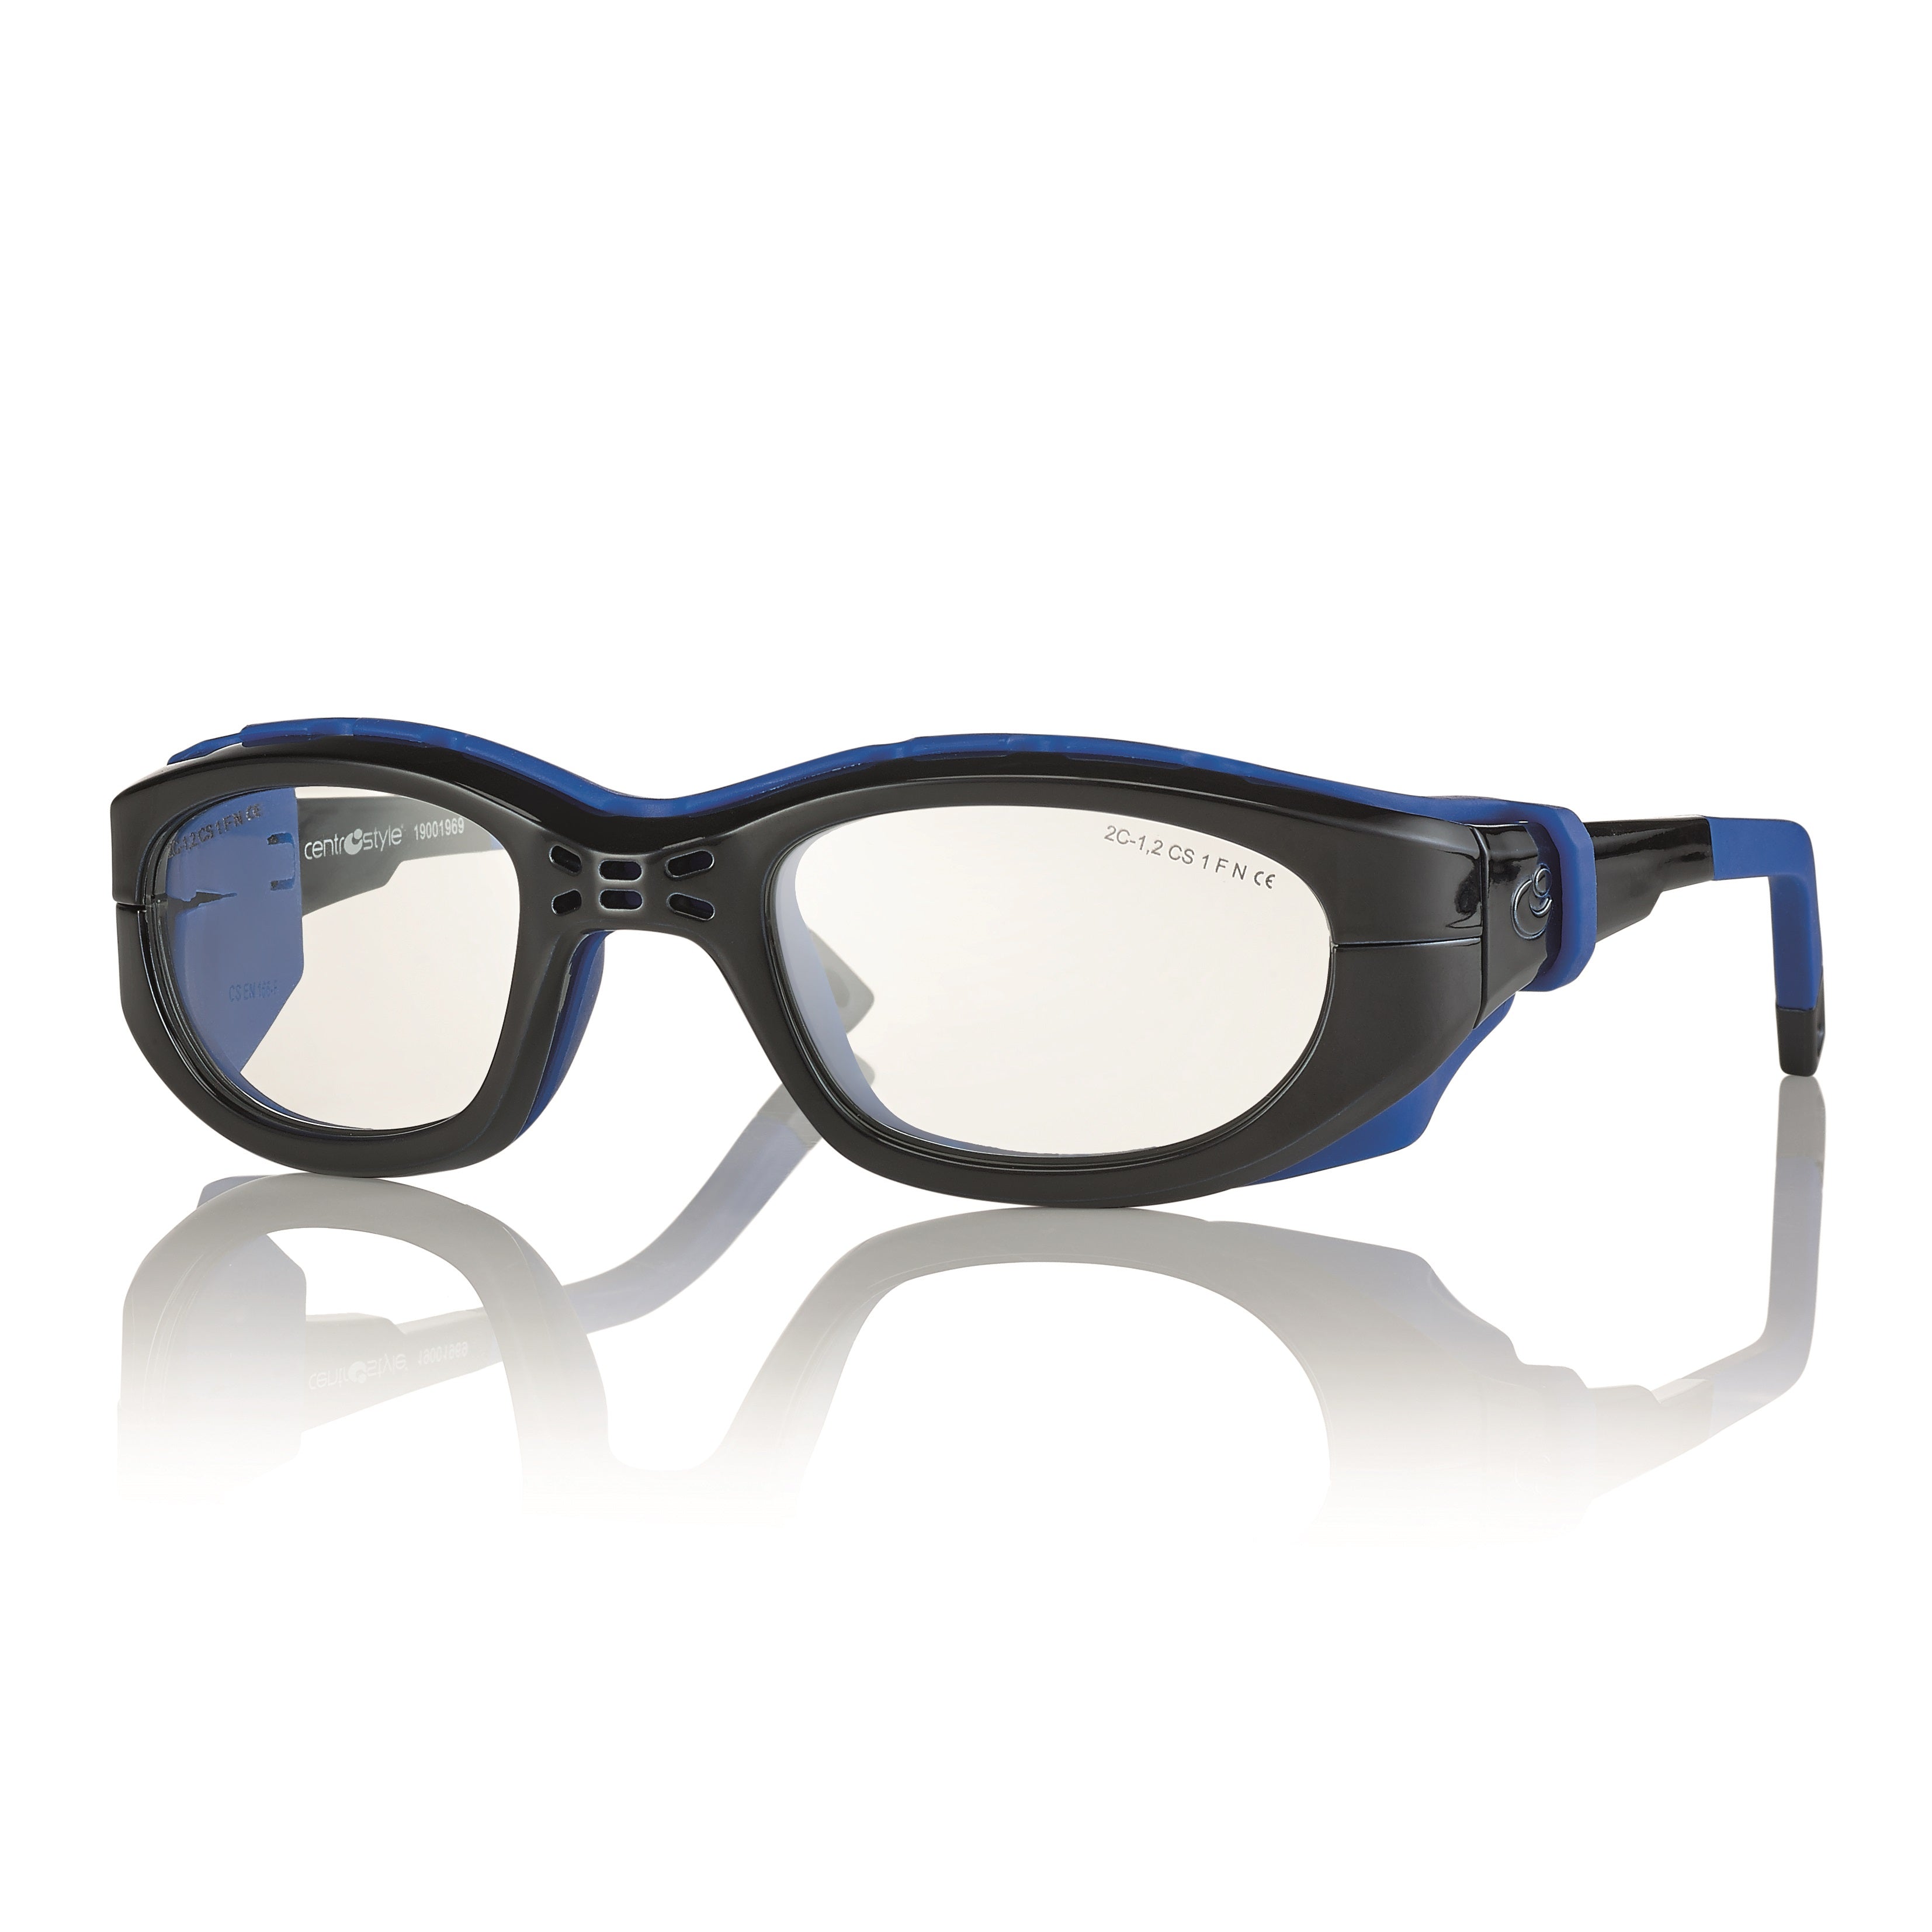 Centrostyle Sports Frame/Goggle - Xtra Large 55 Eye Size